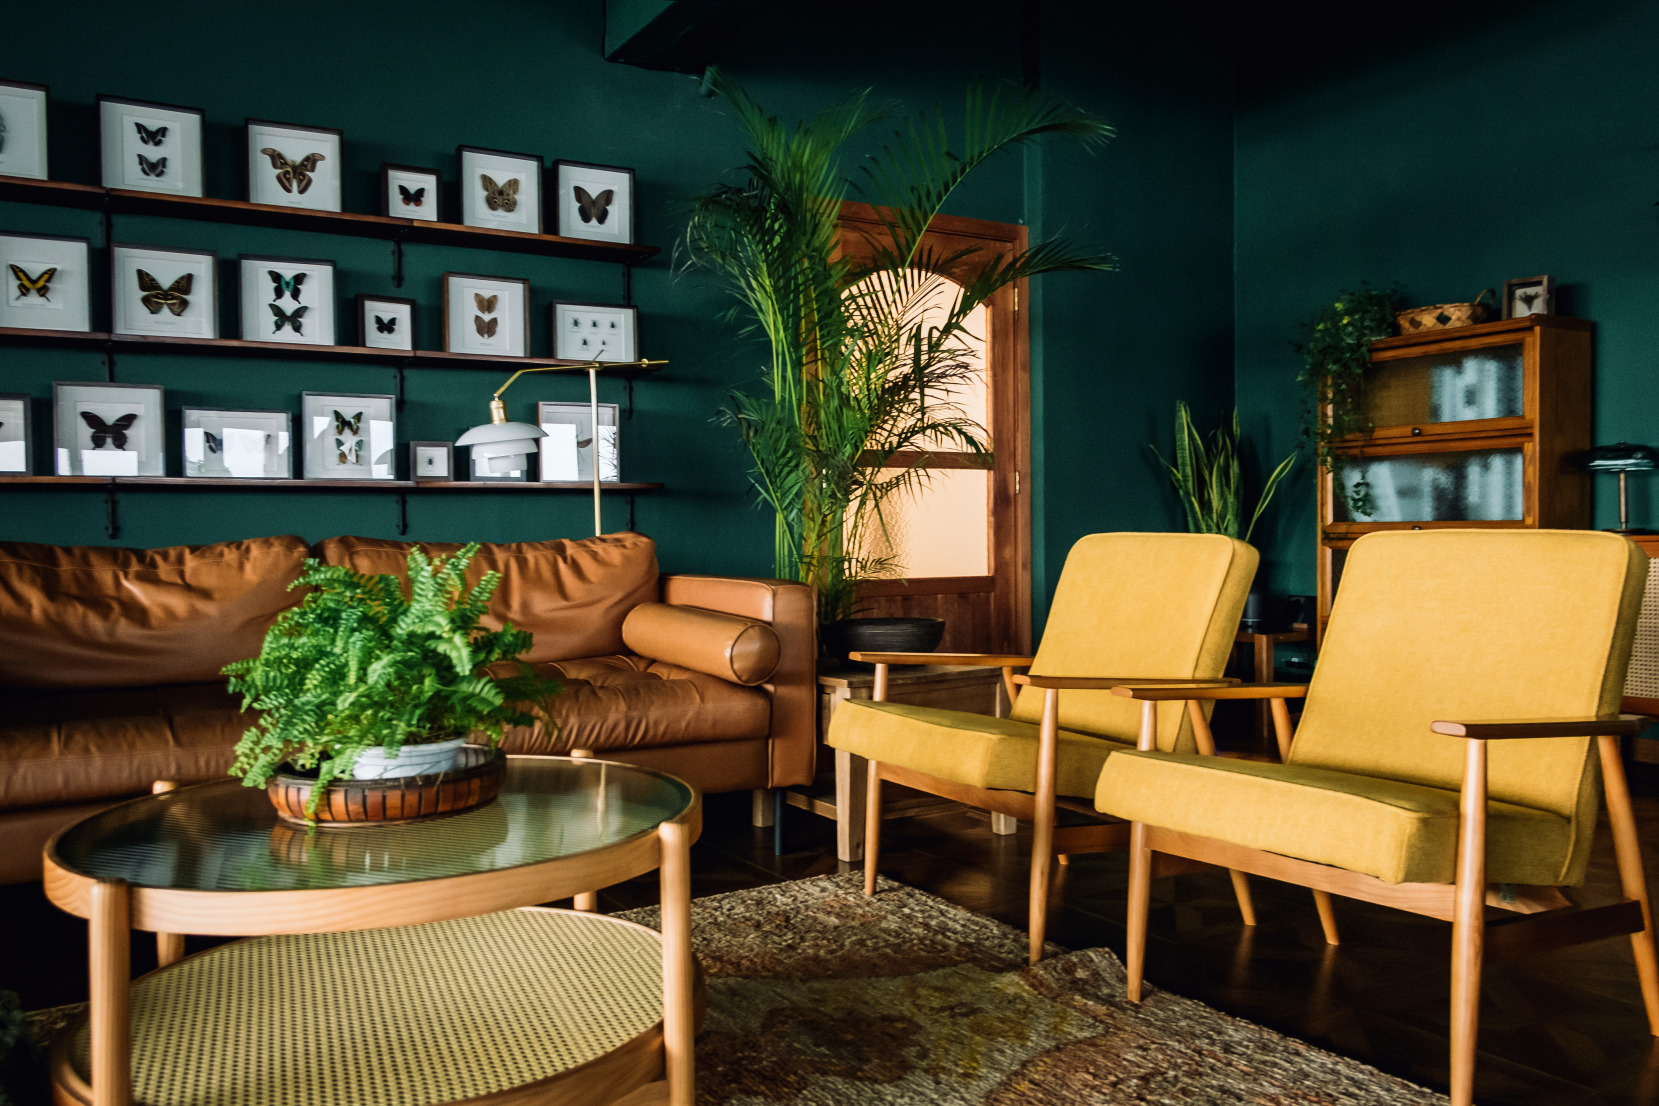 Salon avec des murs de couleur sarcelle, des accents en bois, des chaises jaunes et un canapé marron dans une nouvelle maison.